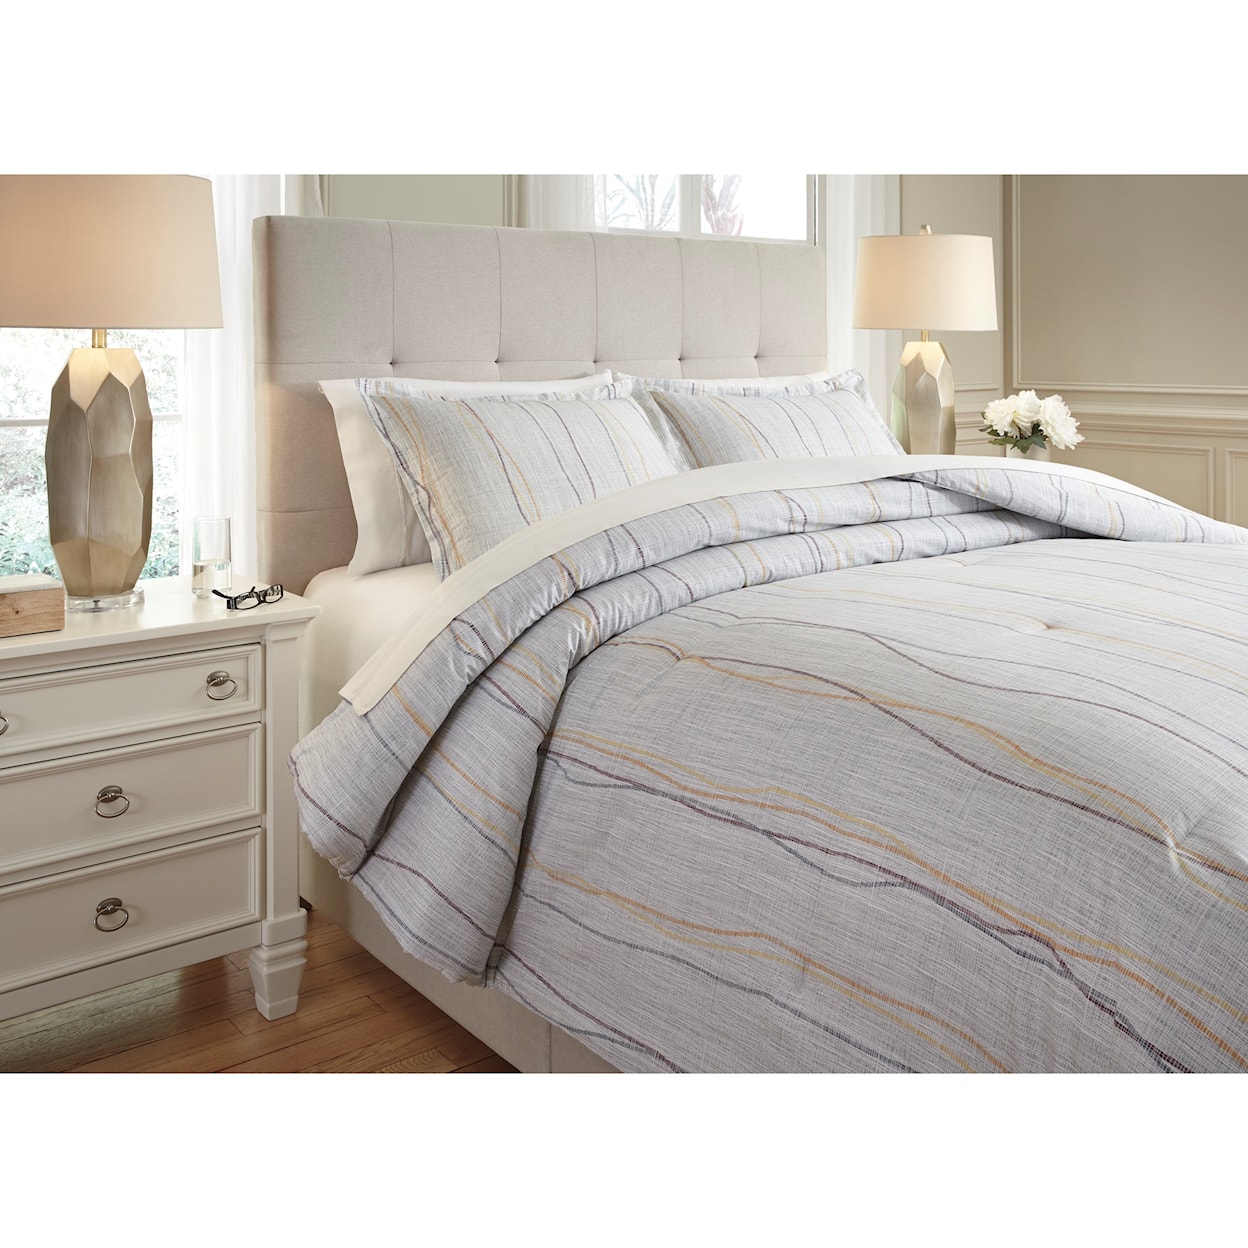 Ashley Furniture Signature Design Bedding Sets King Bevan Multi Comforter Set